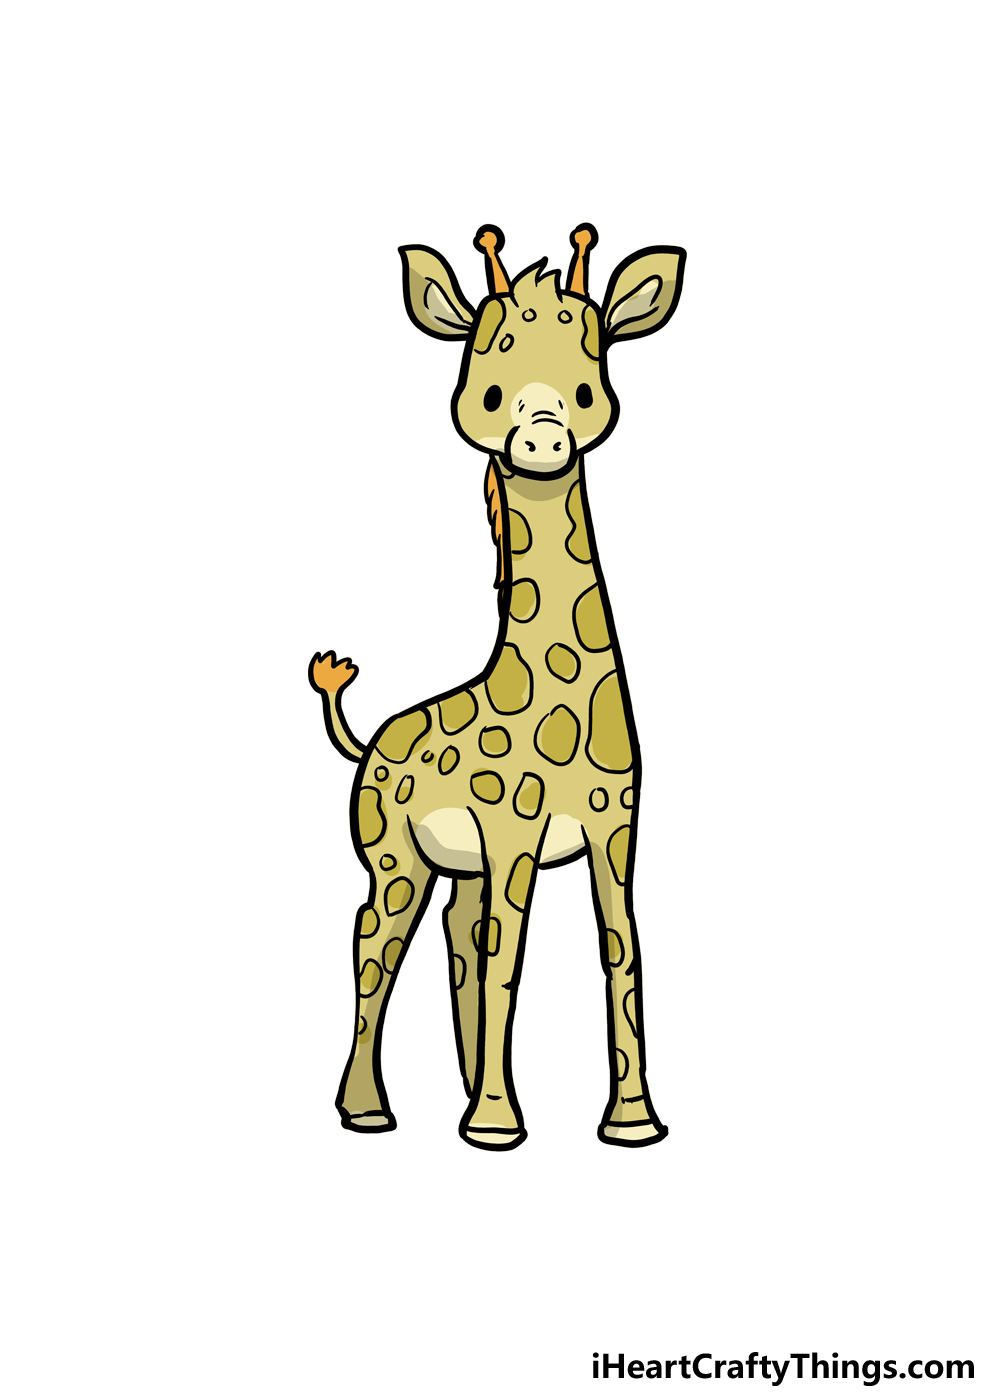 How to Draw A Cute Giraffe step 6